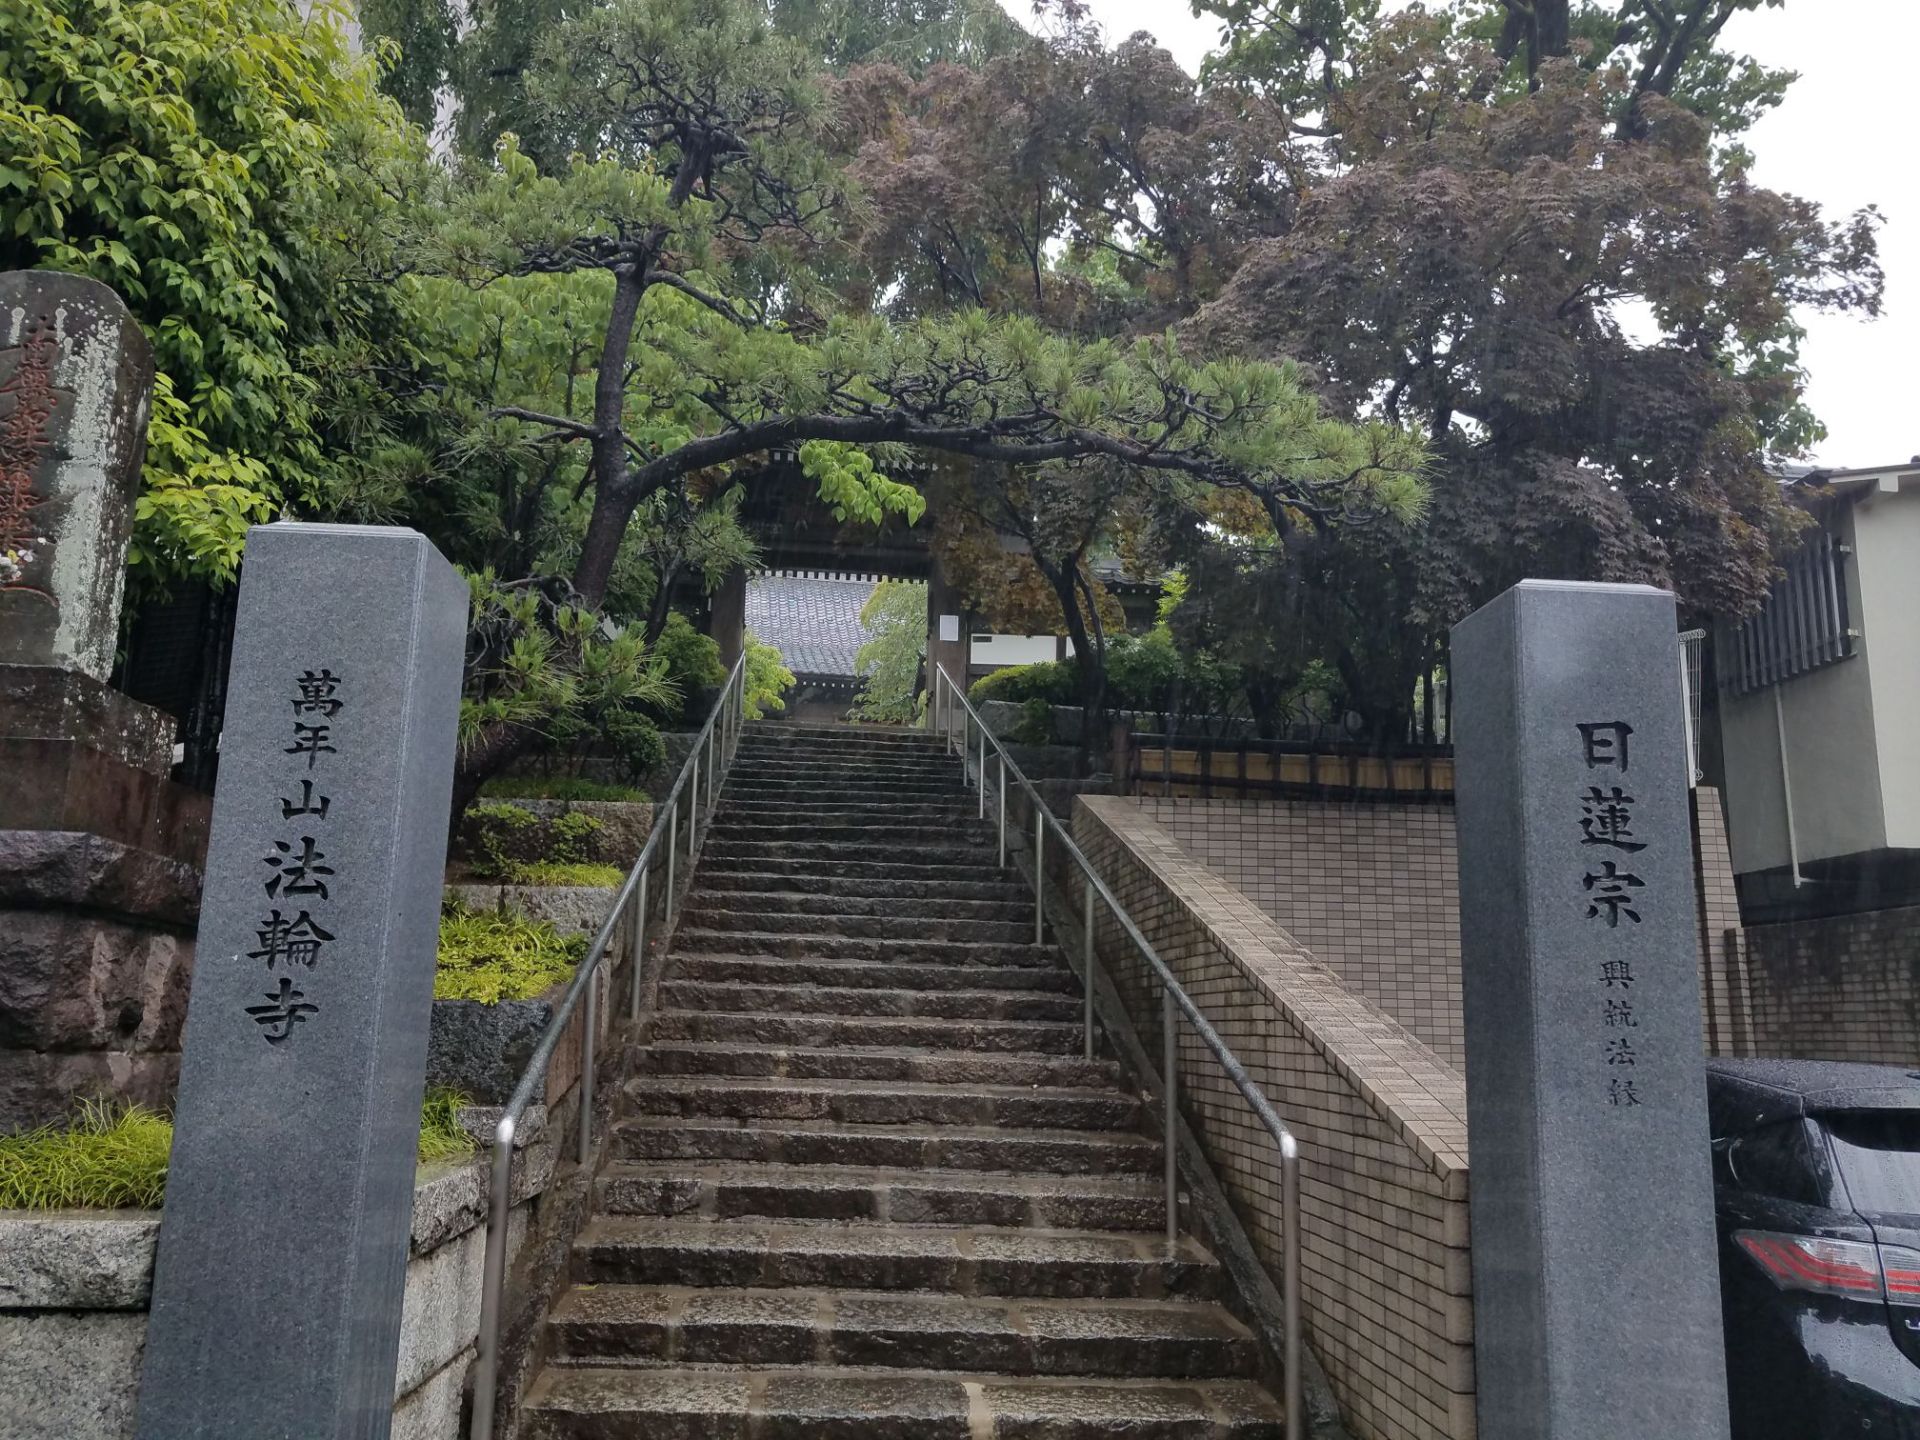 万年山法轮寺 这个寺庙就在早稻田大学的旁边，距离非常近，是我们去早稻田大学参观后无意中发现的。寺庙很